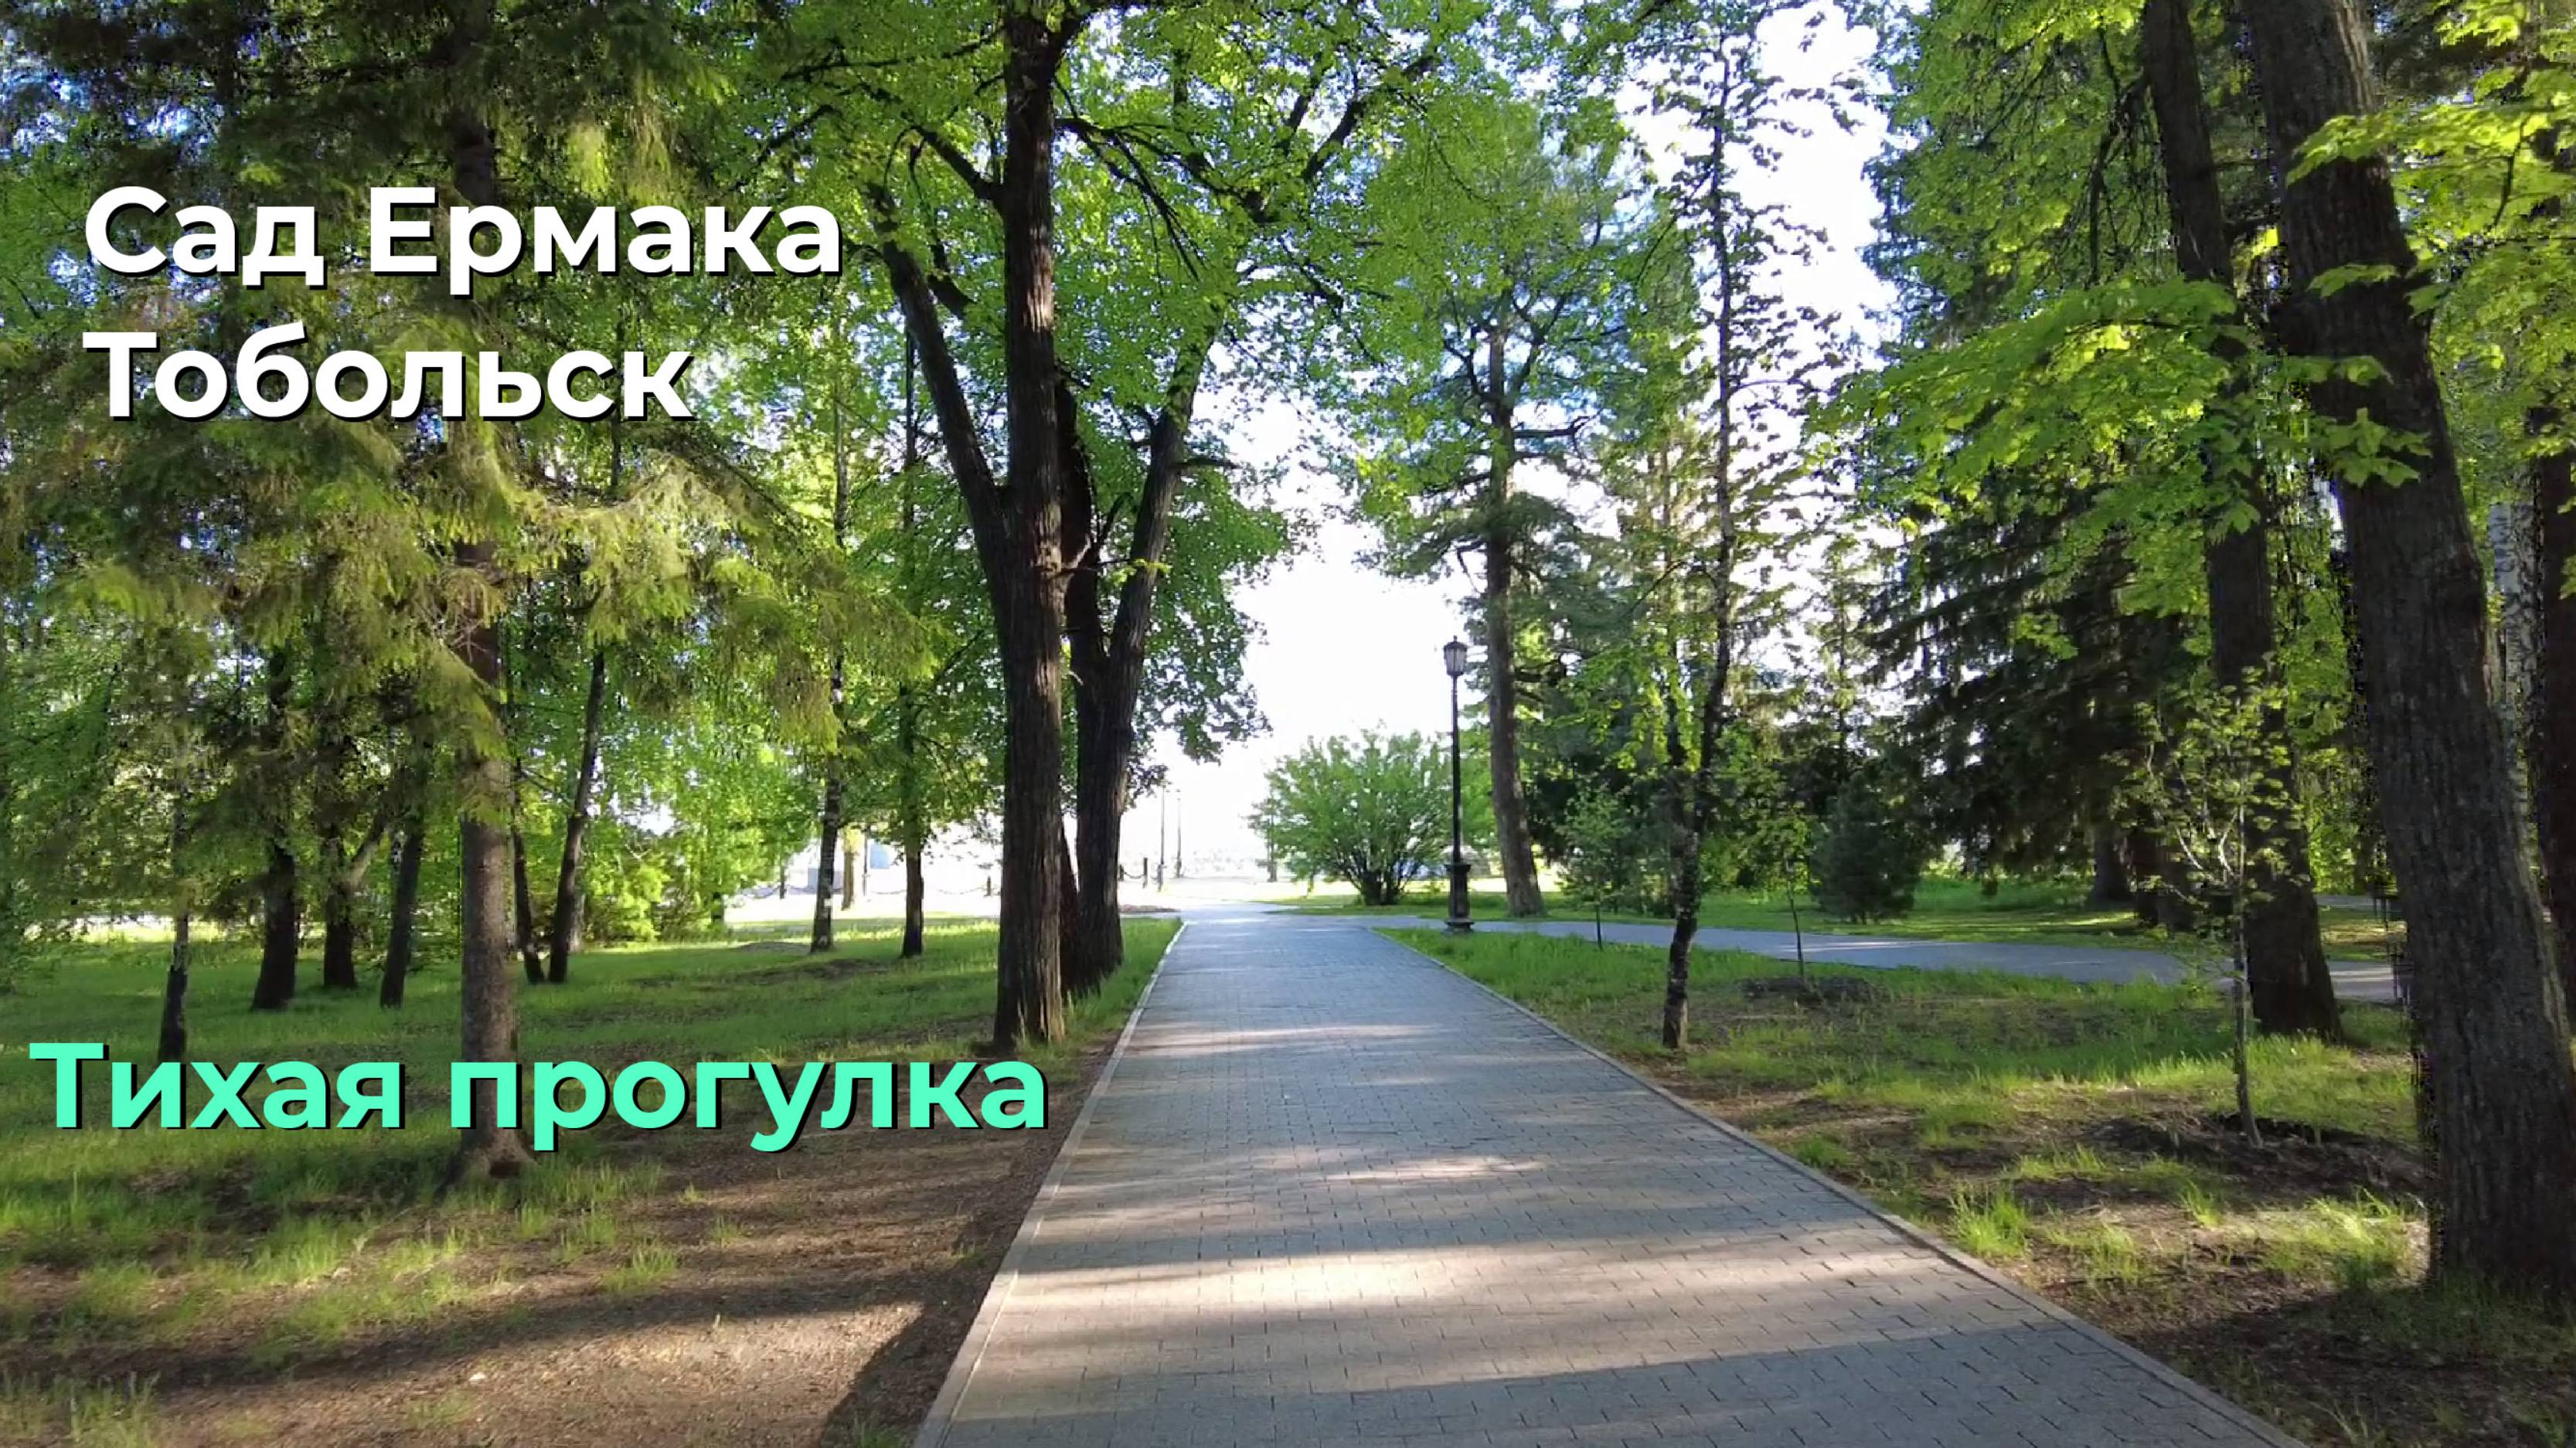 Тихая прогулка по парку “Сад Ермака ” в Тобольске.